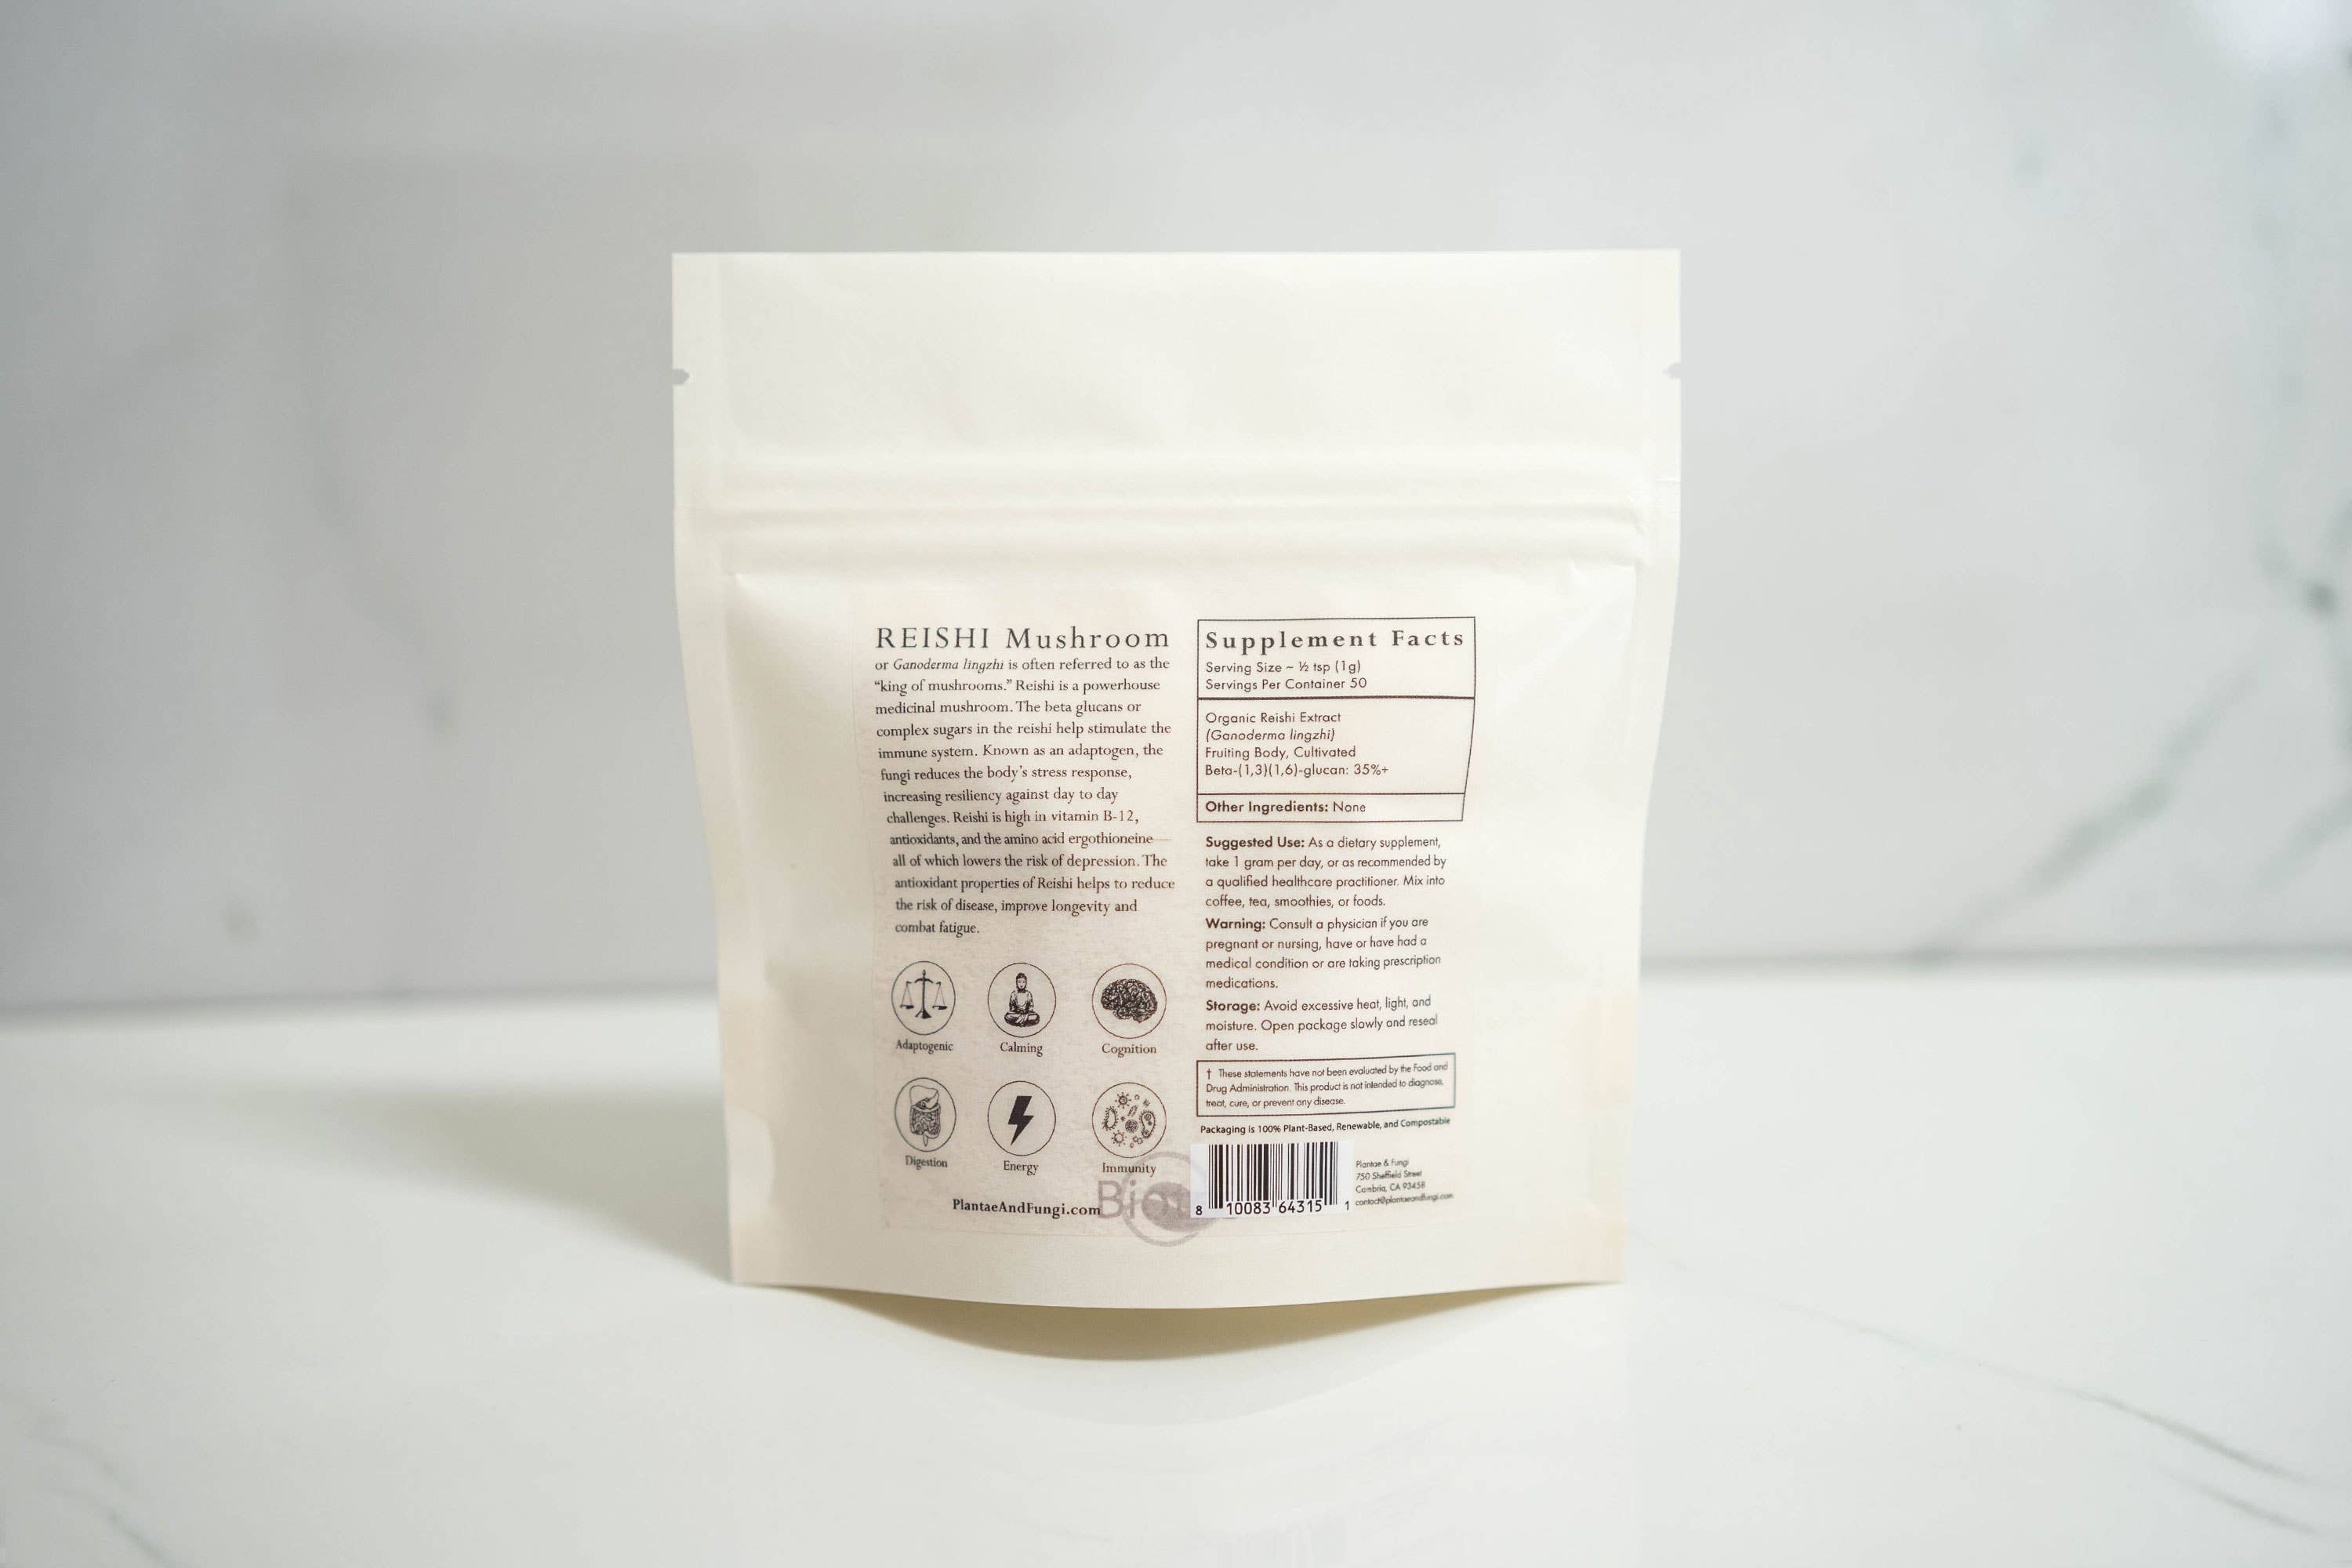 Reishi Mushroom Powder: 2 oz (retail)